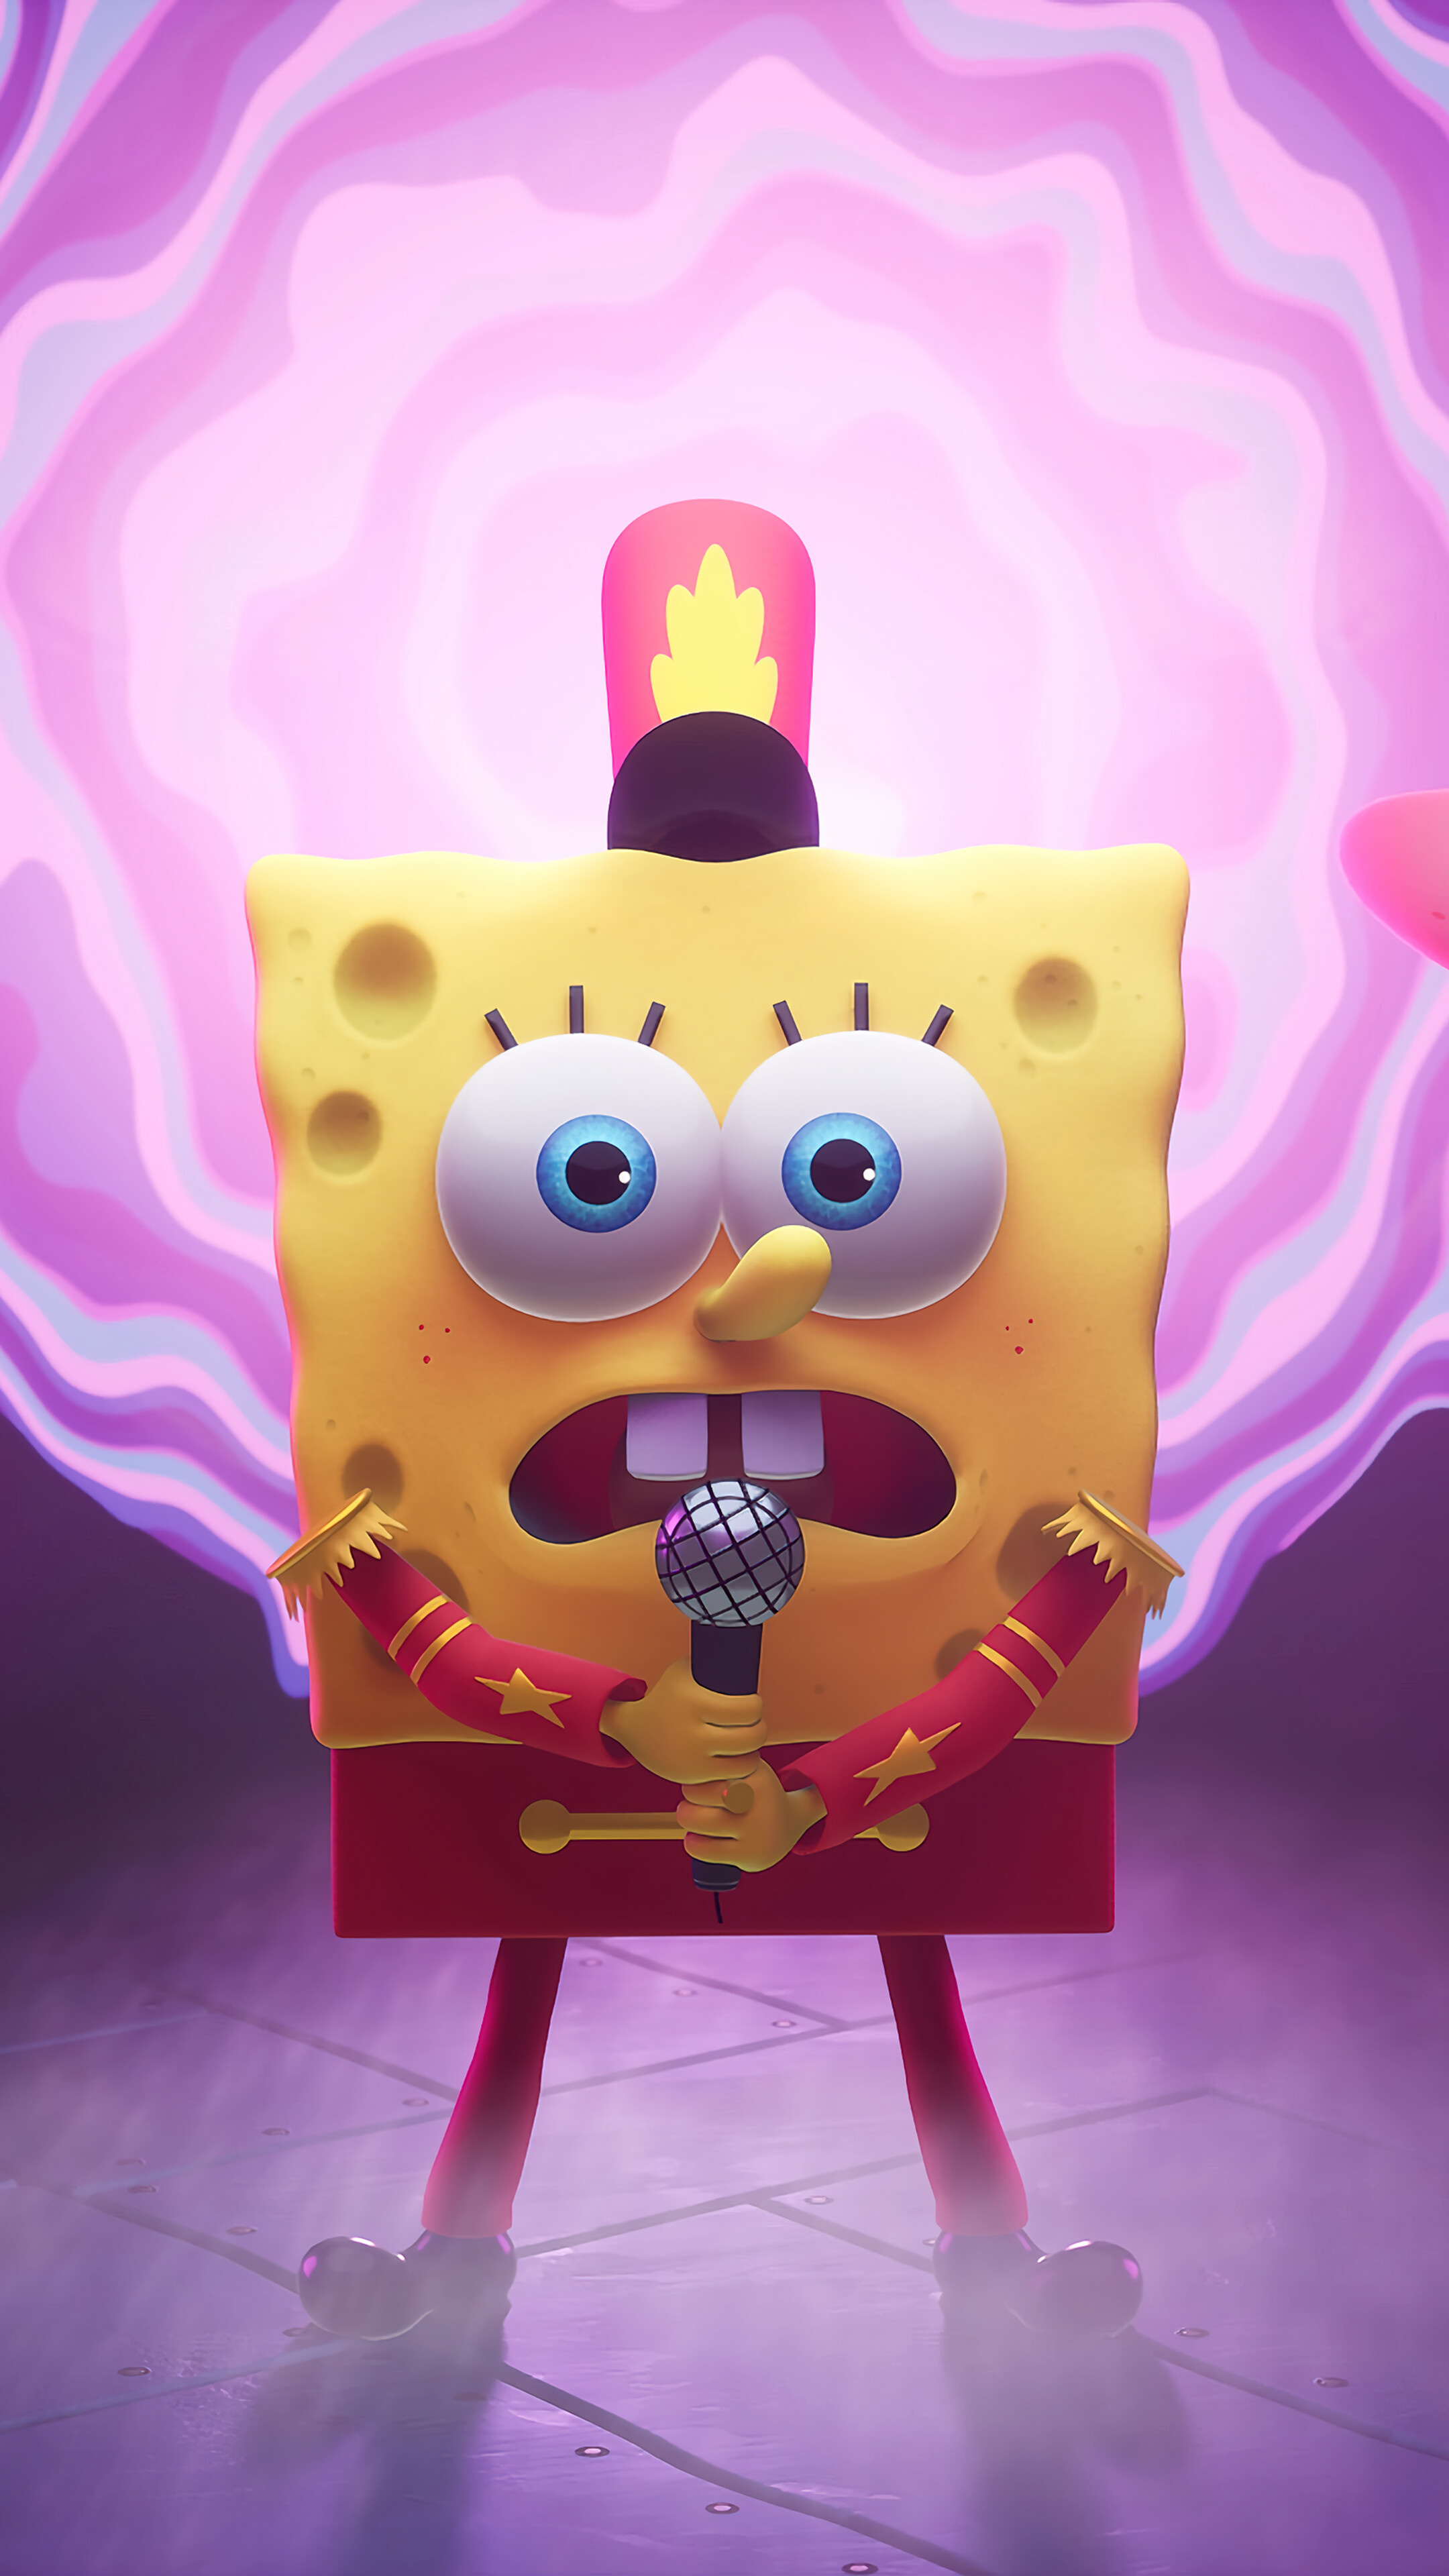 SpongeBob Schwammkopf, Cosmic adventure, 4K wallpaper, Free download, 2160x3840 4K Phone